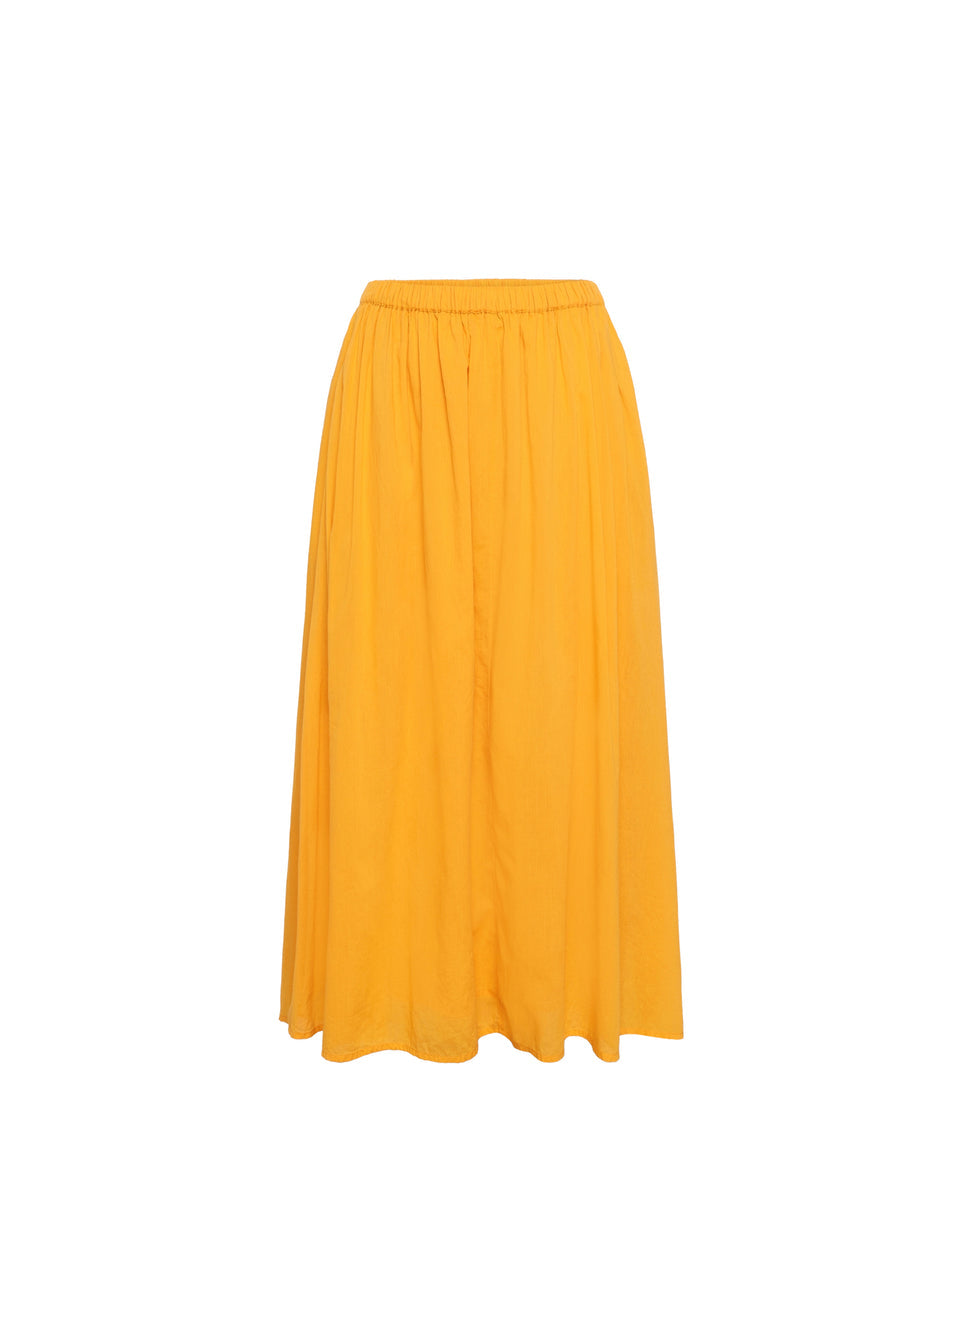 FRNCH  CALISTA skirt / women